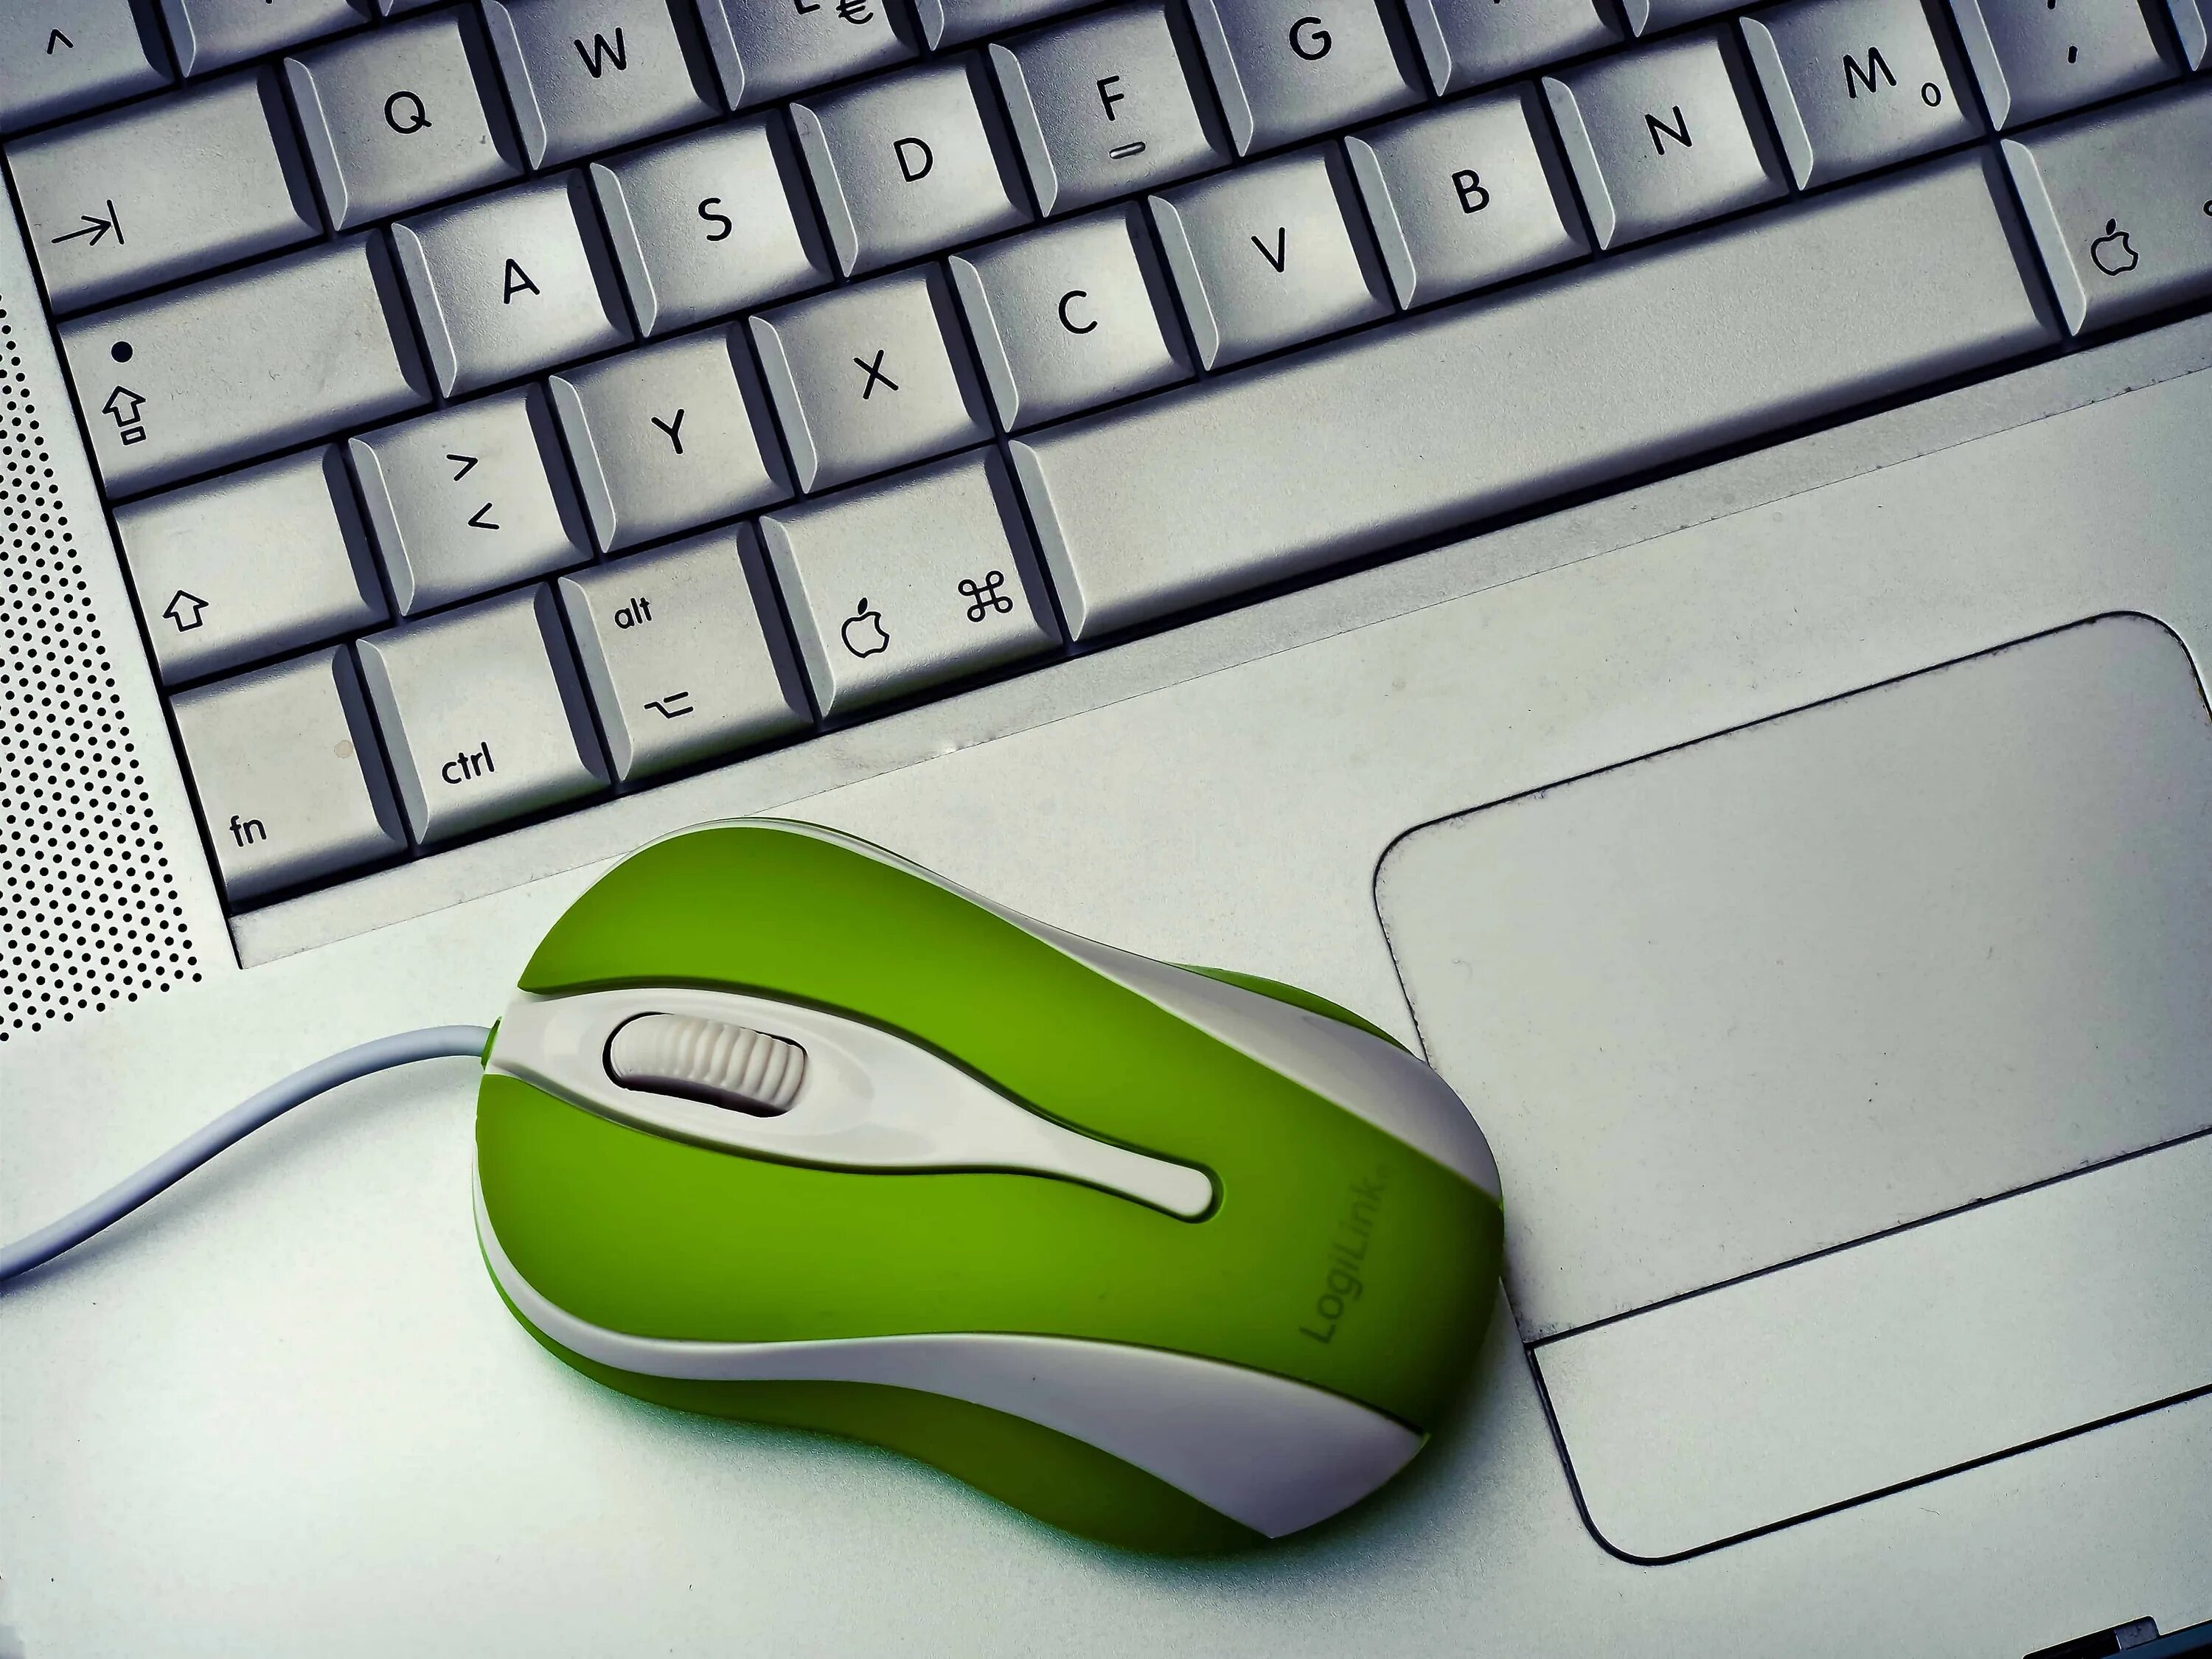 Компьютерные мыши и клавиатуры. Мышь компьютерная. Компьютерная мышь и клавиатура. Компьютер мышь клавиатура. Компьютерная мышь с компьютером.